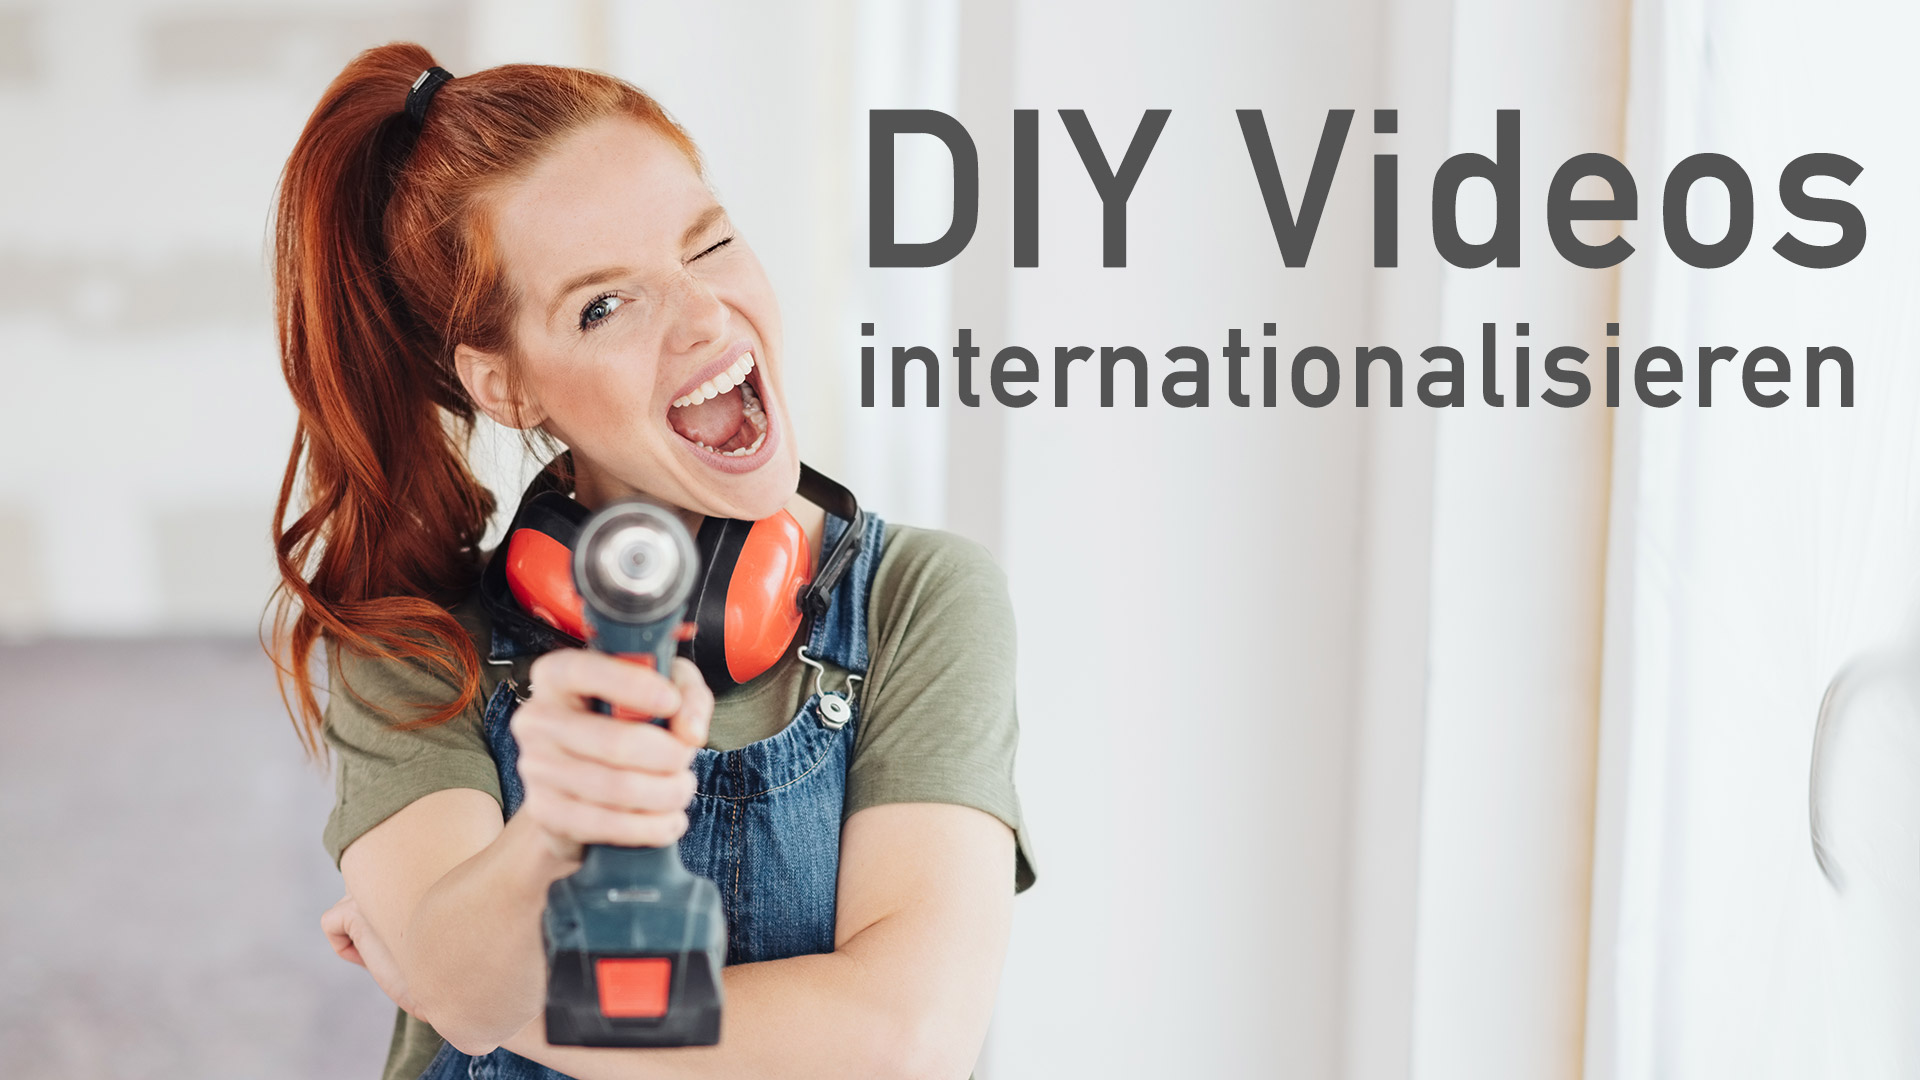 DIY Videos internationalisieren. Hier erfahren Sie, für wen sich das eignet.